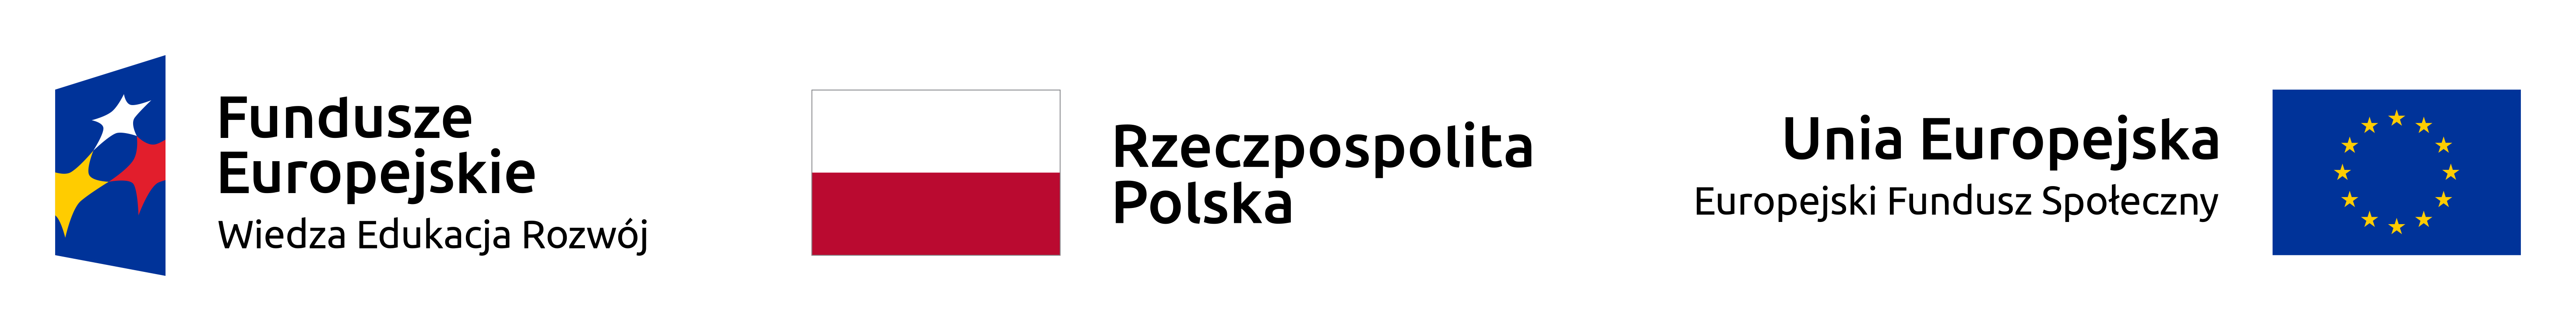 Logotyp Fundusze Unii Europejskiej, Wiedza Edukacja Rozwój, flaga Polski, flaga Unii Europejskiej, Europejski Fundusz Społeczny.